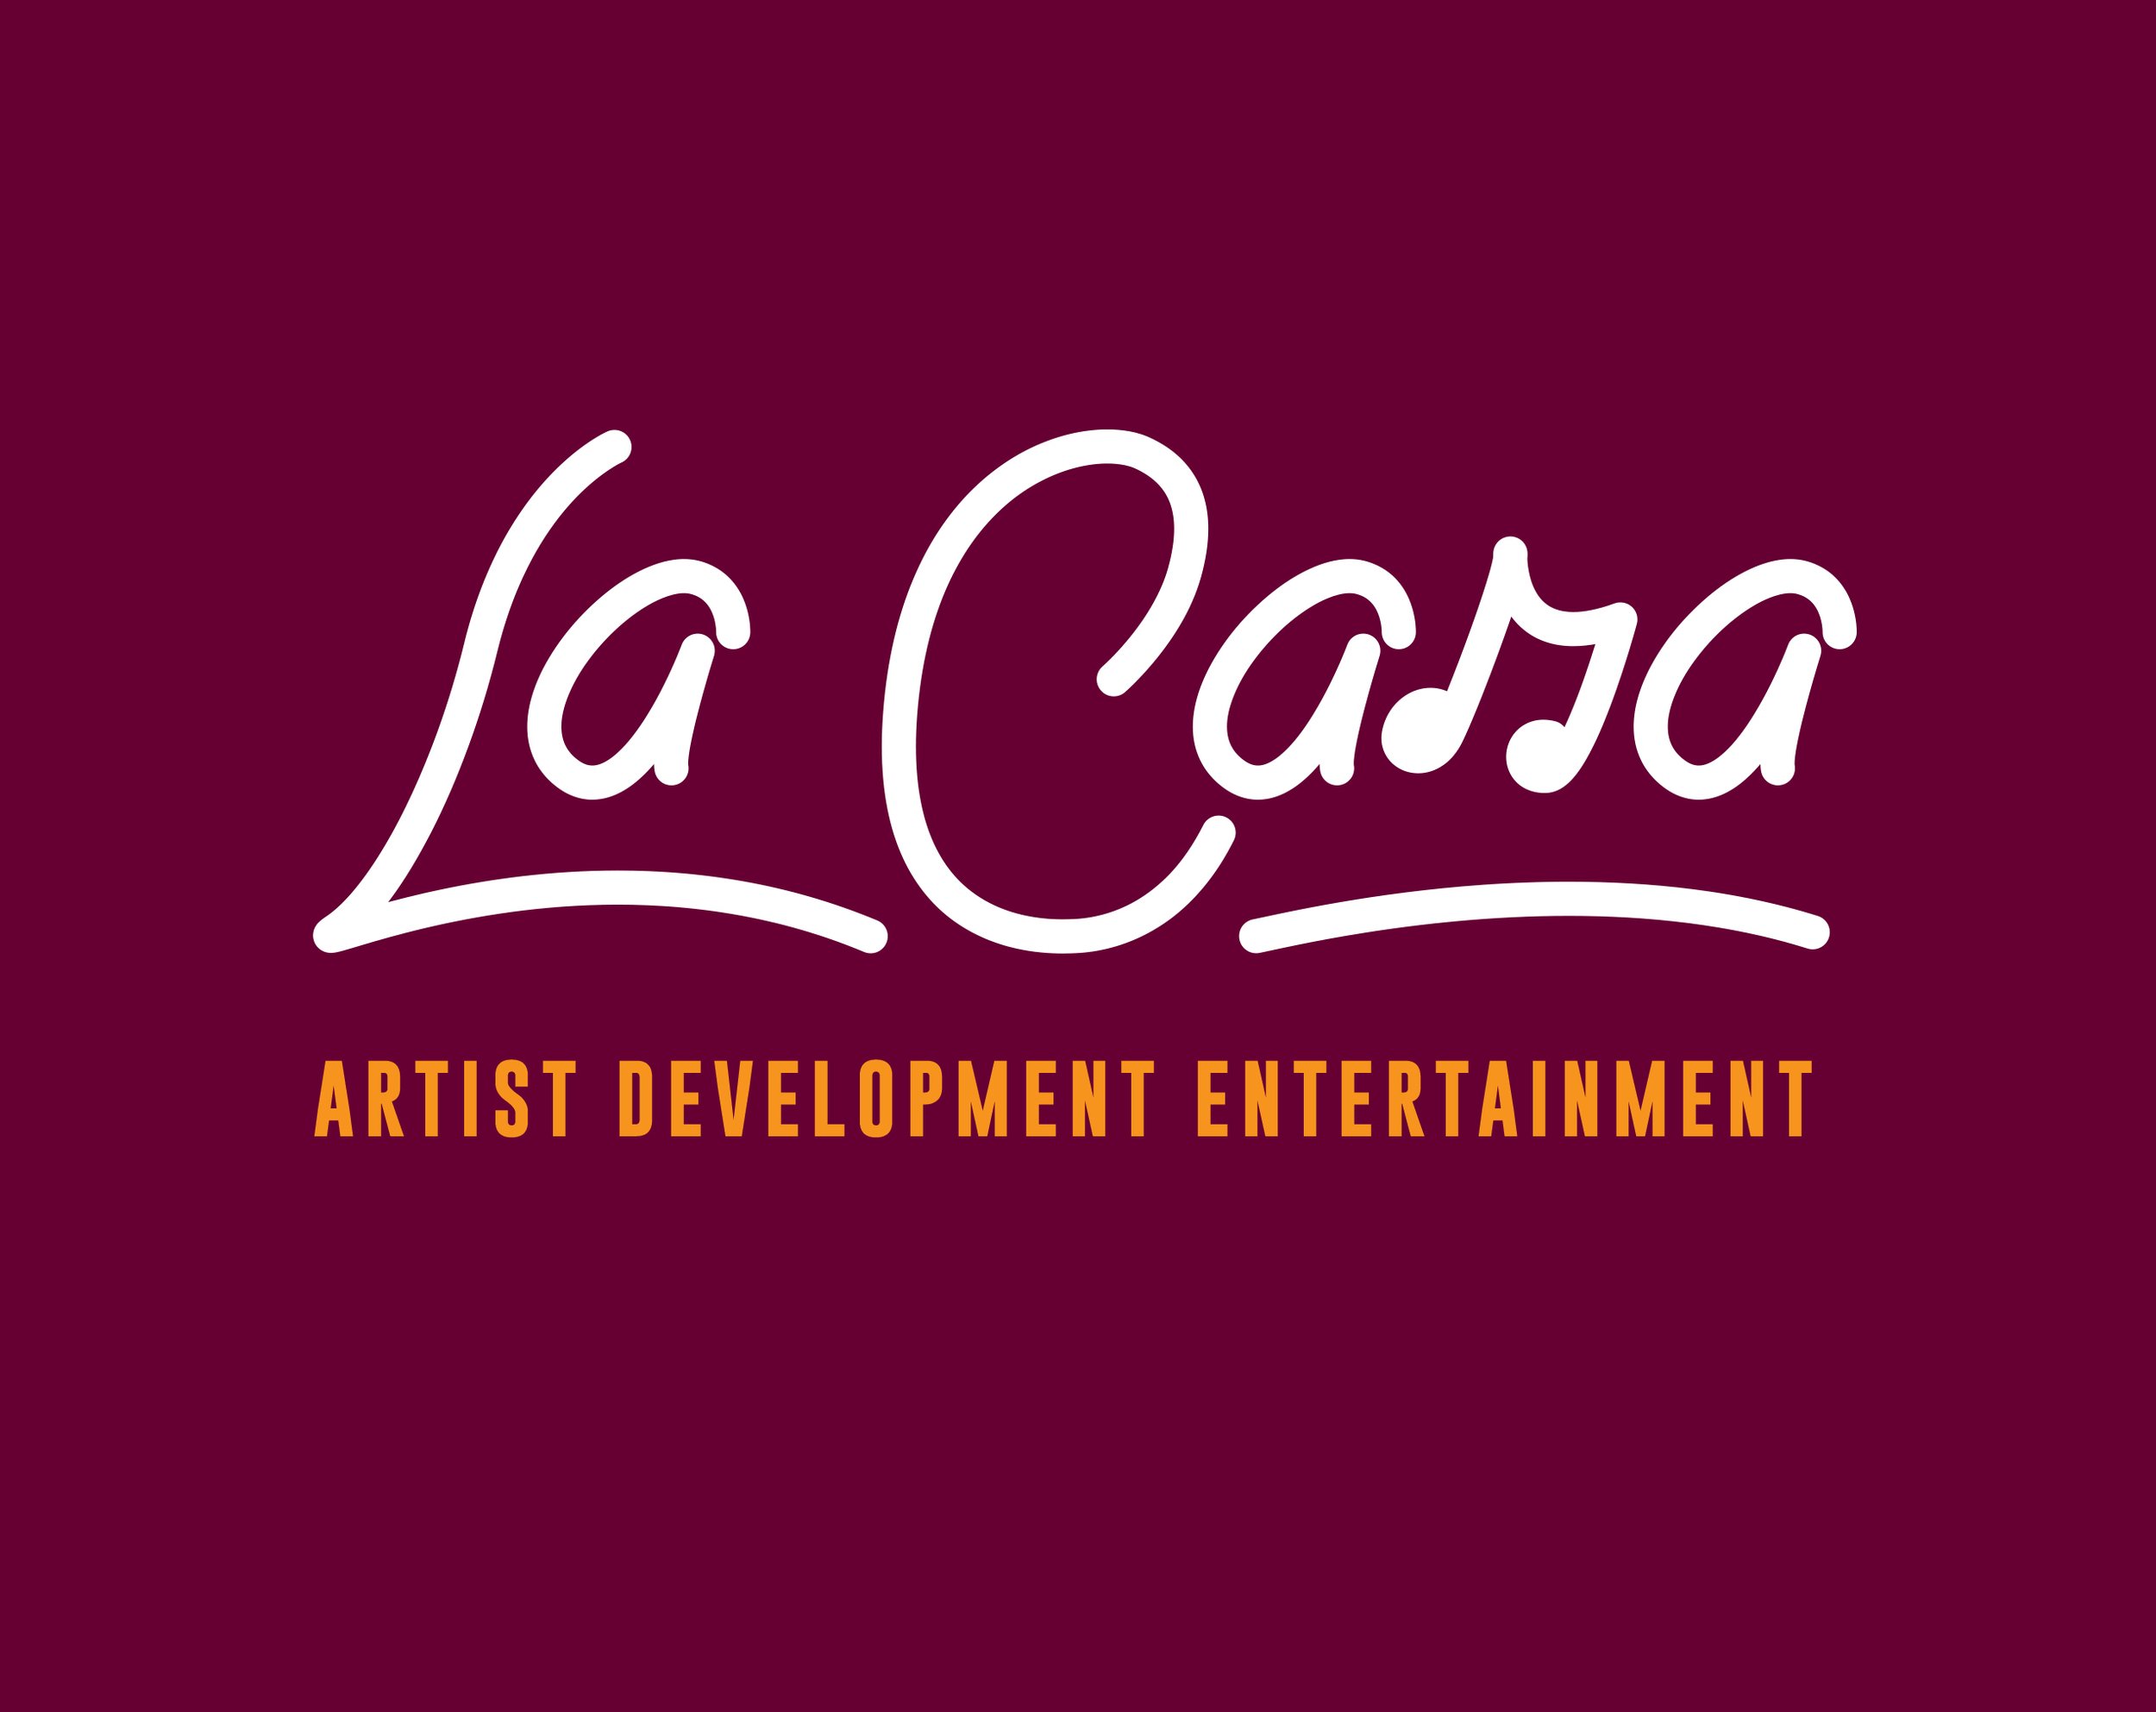 LA CARA logo_purple.jpg